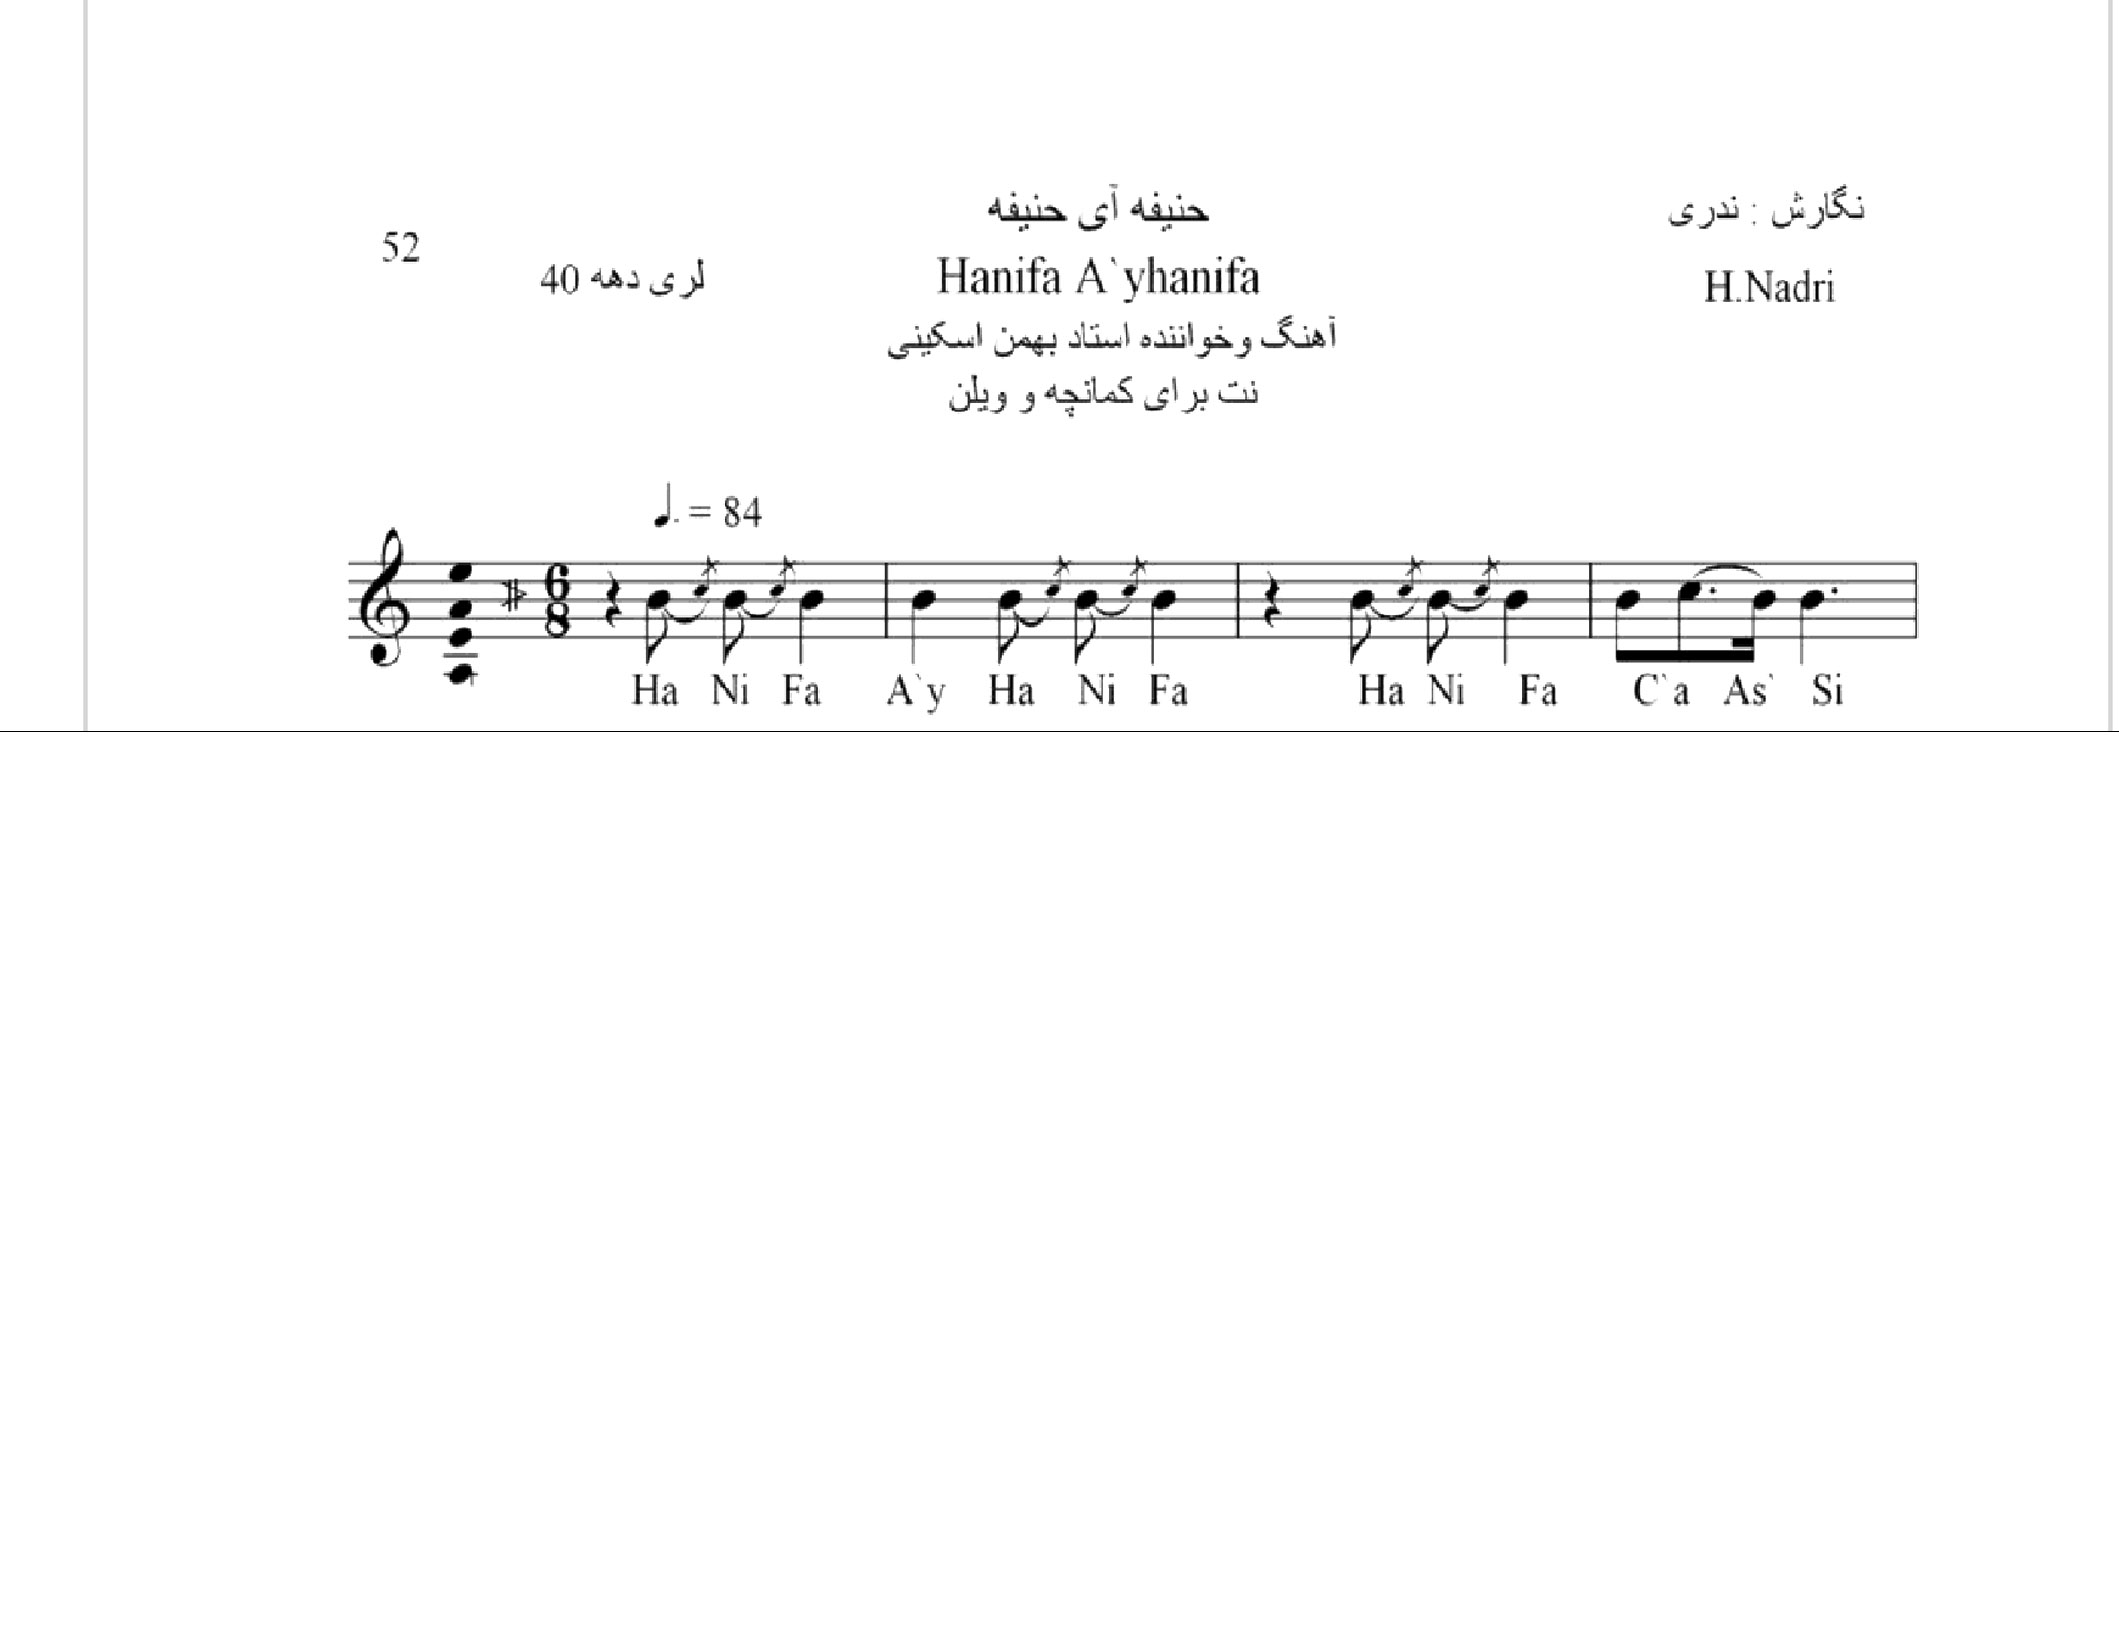 نت آهنگ حنیفه آی حنیفه محلی لری حجت اله ندری قابل اجرا با کمانچه و دیگر سازها